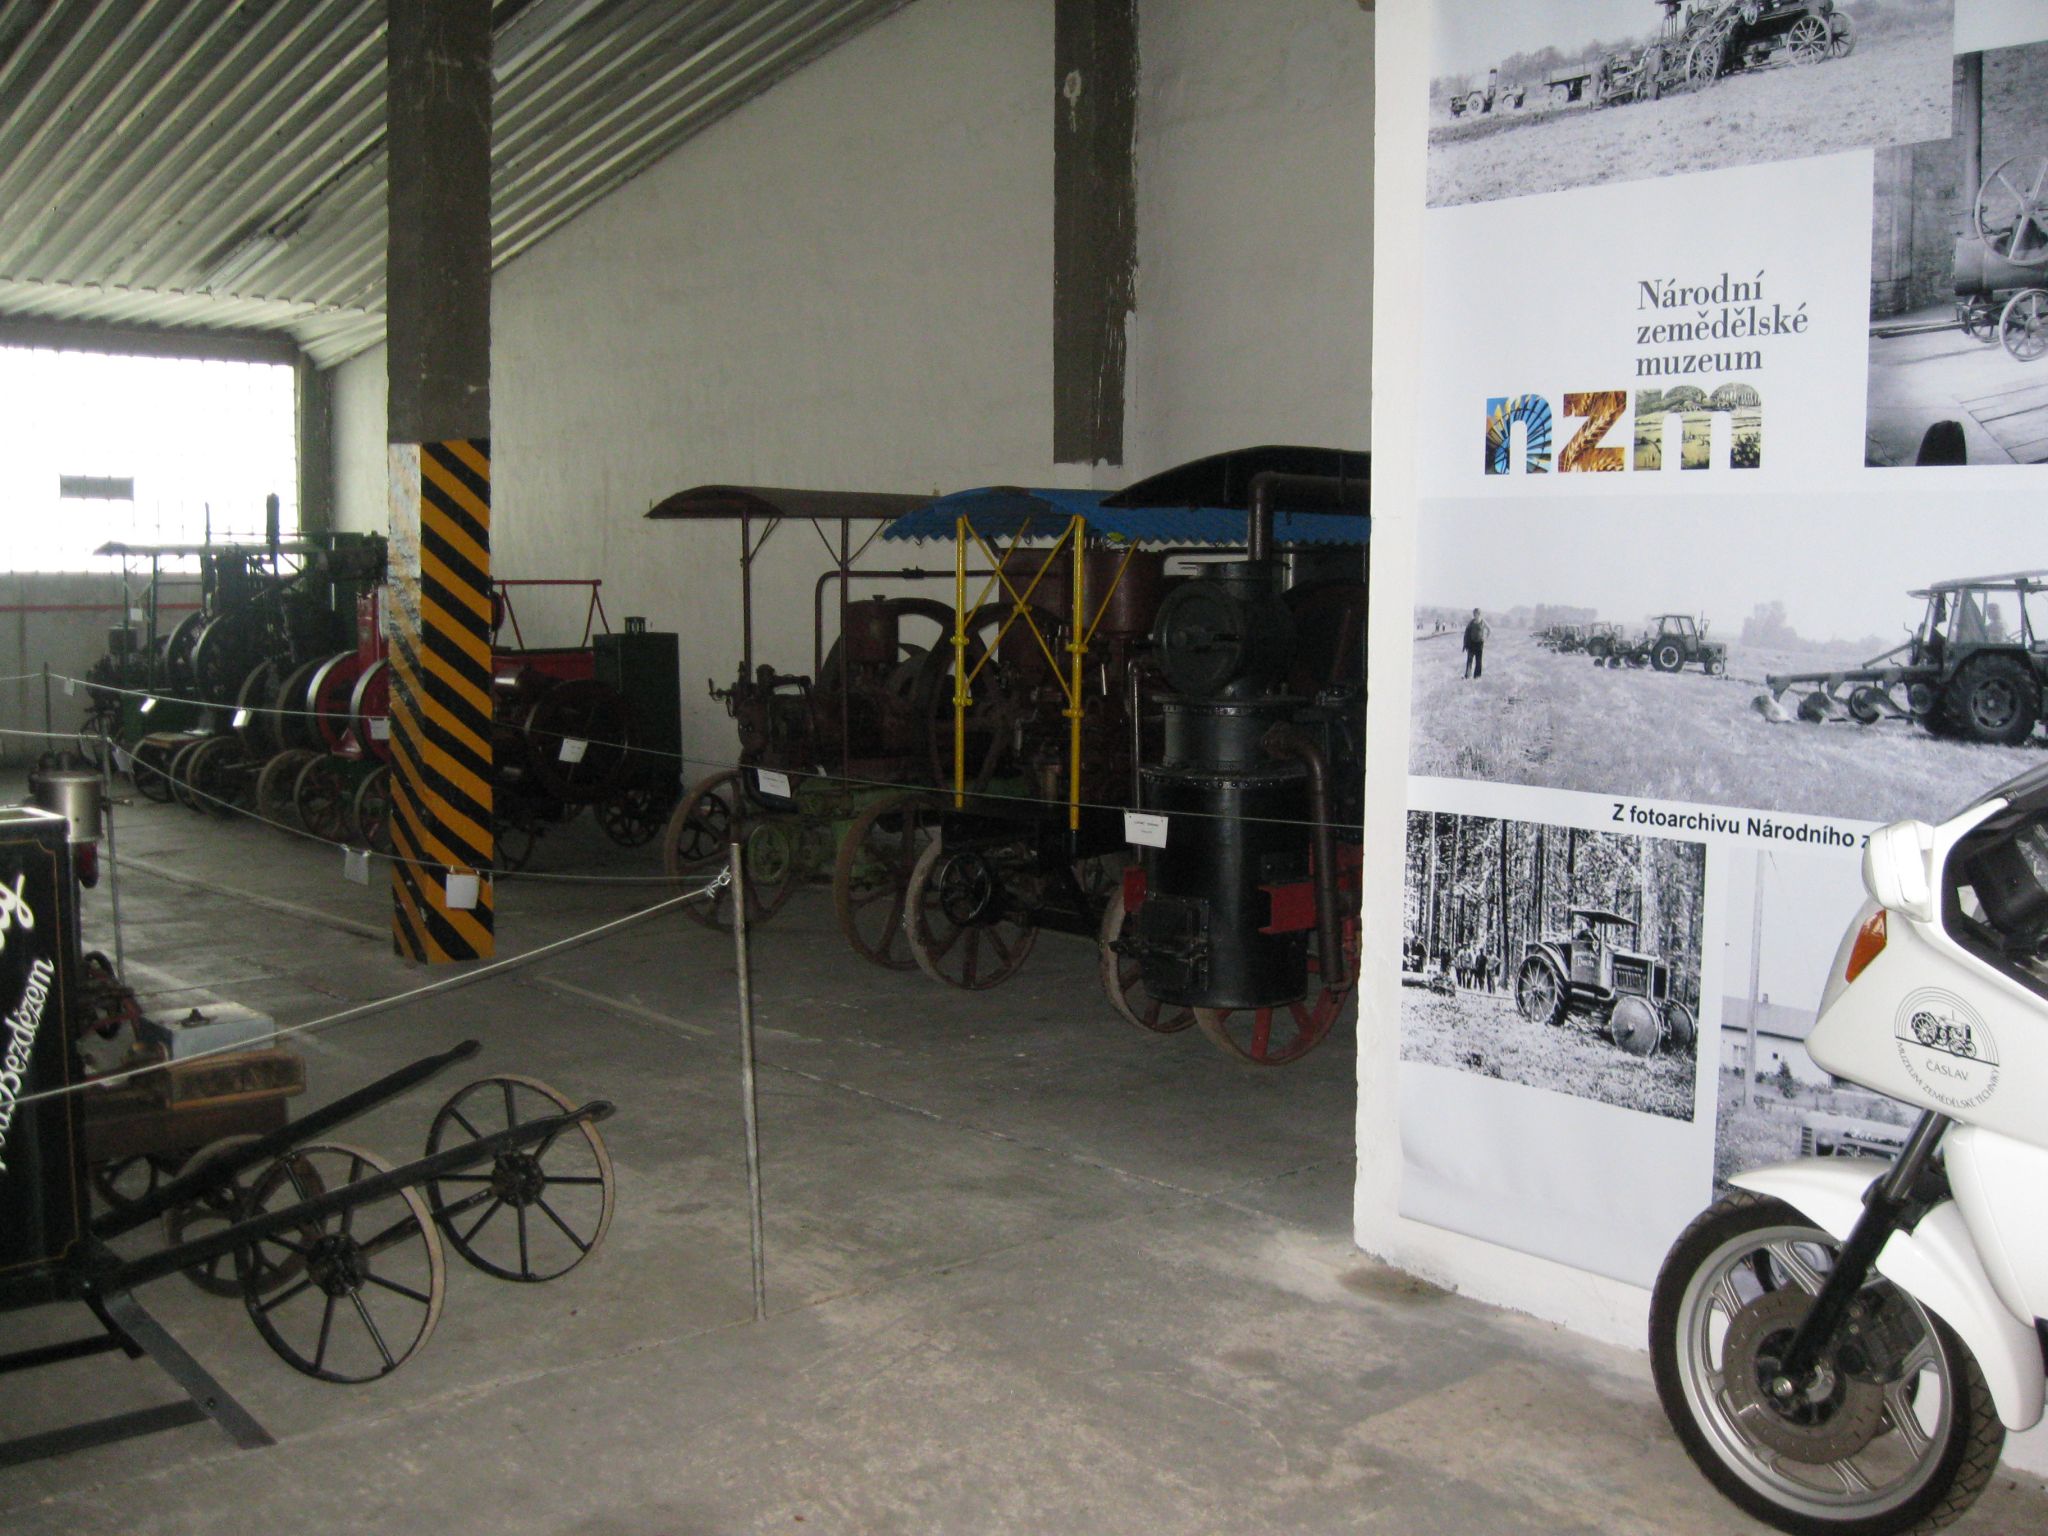 NZM muzeum met oude tractoren en andere machines